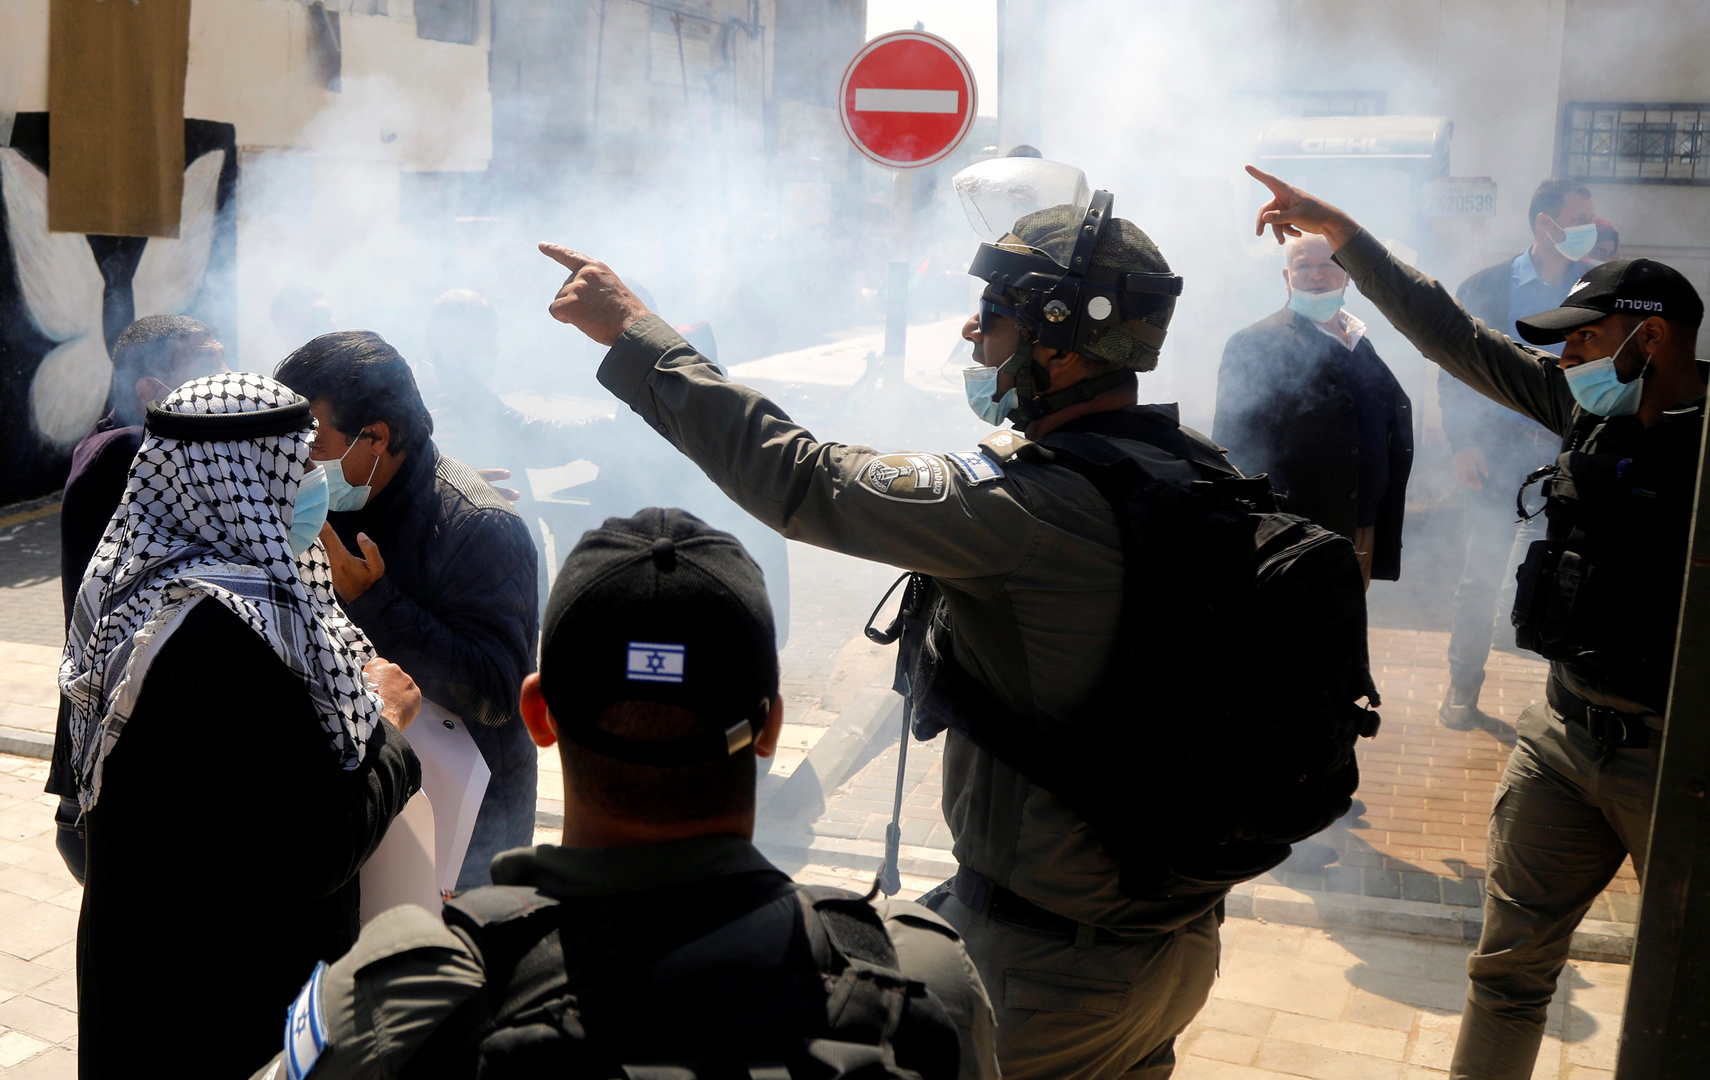 الشرطة الإسرائيلية تعتقل مرشحين للمجلس التشريعي الفلسطيني بينهم 2 عن قائمة 